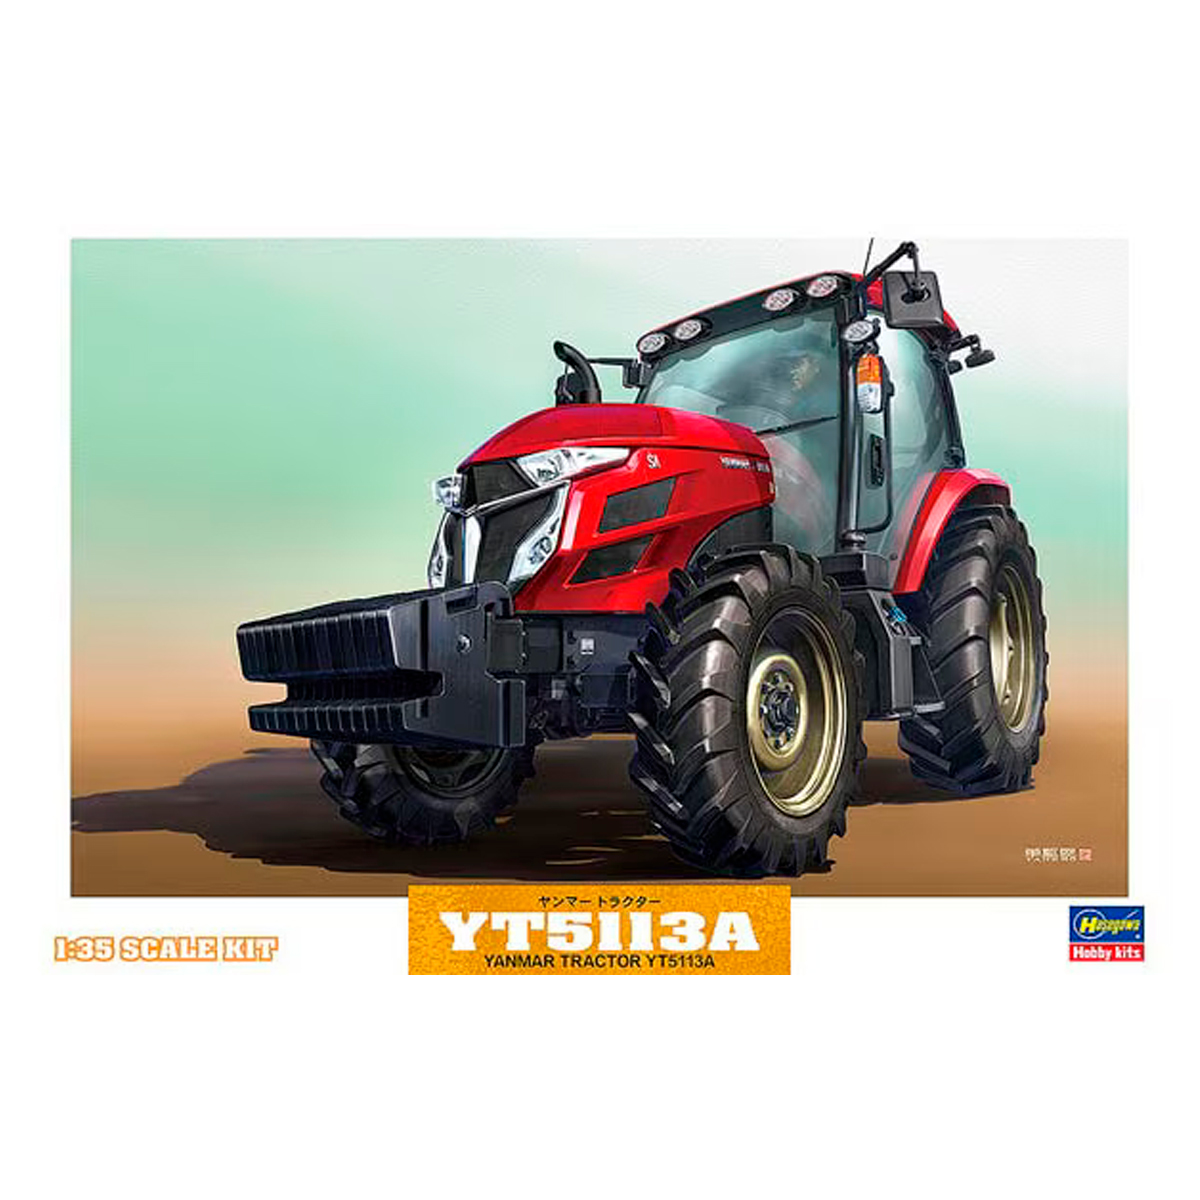 WM05-1/35 Yanmar Tractor YT5113A